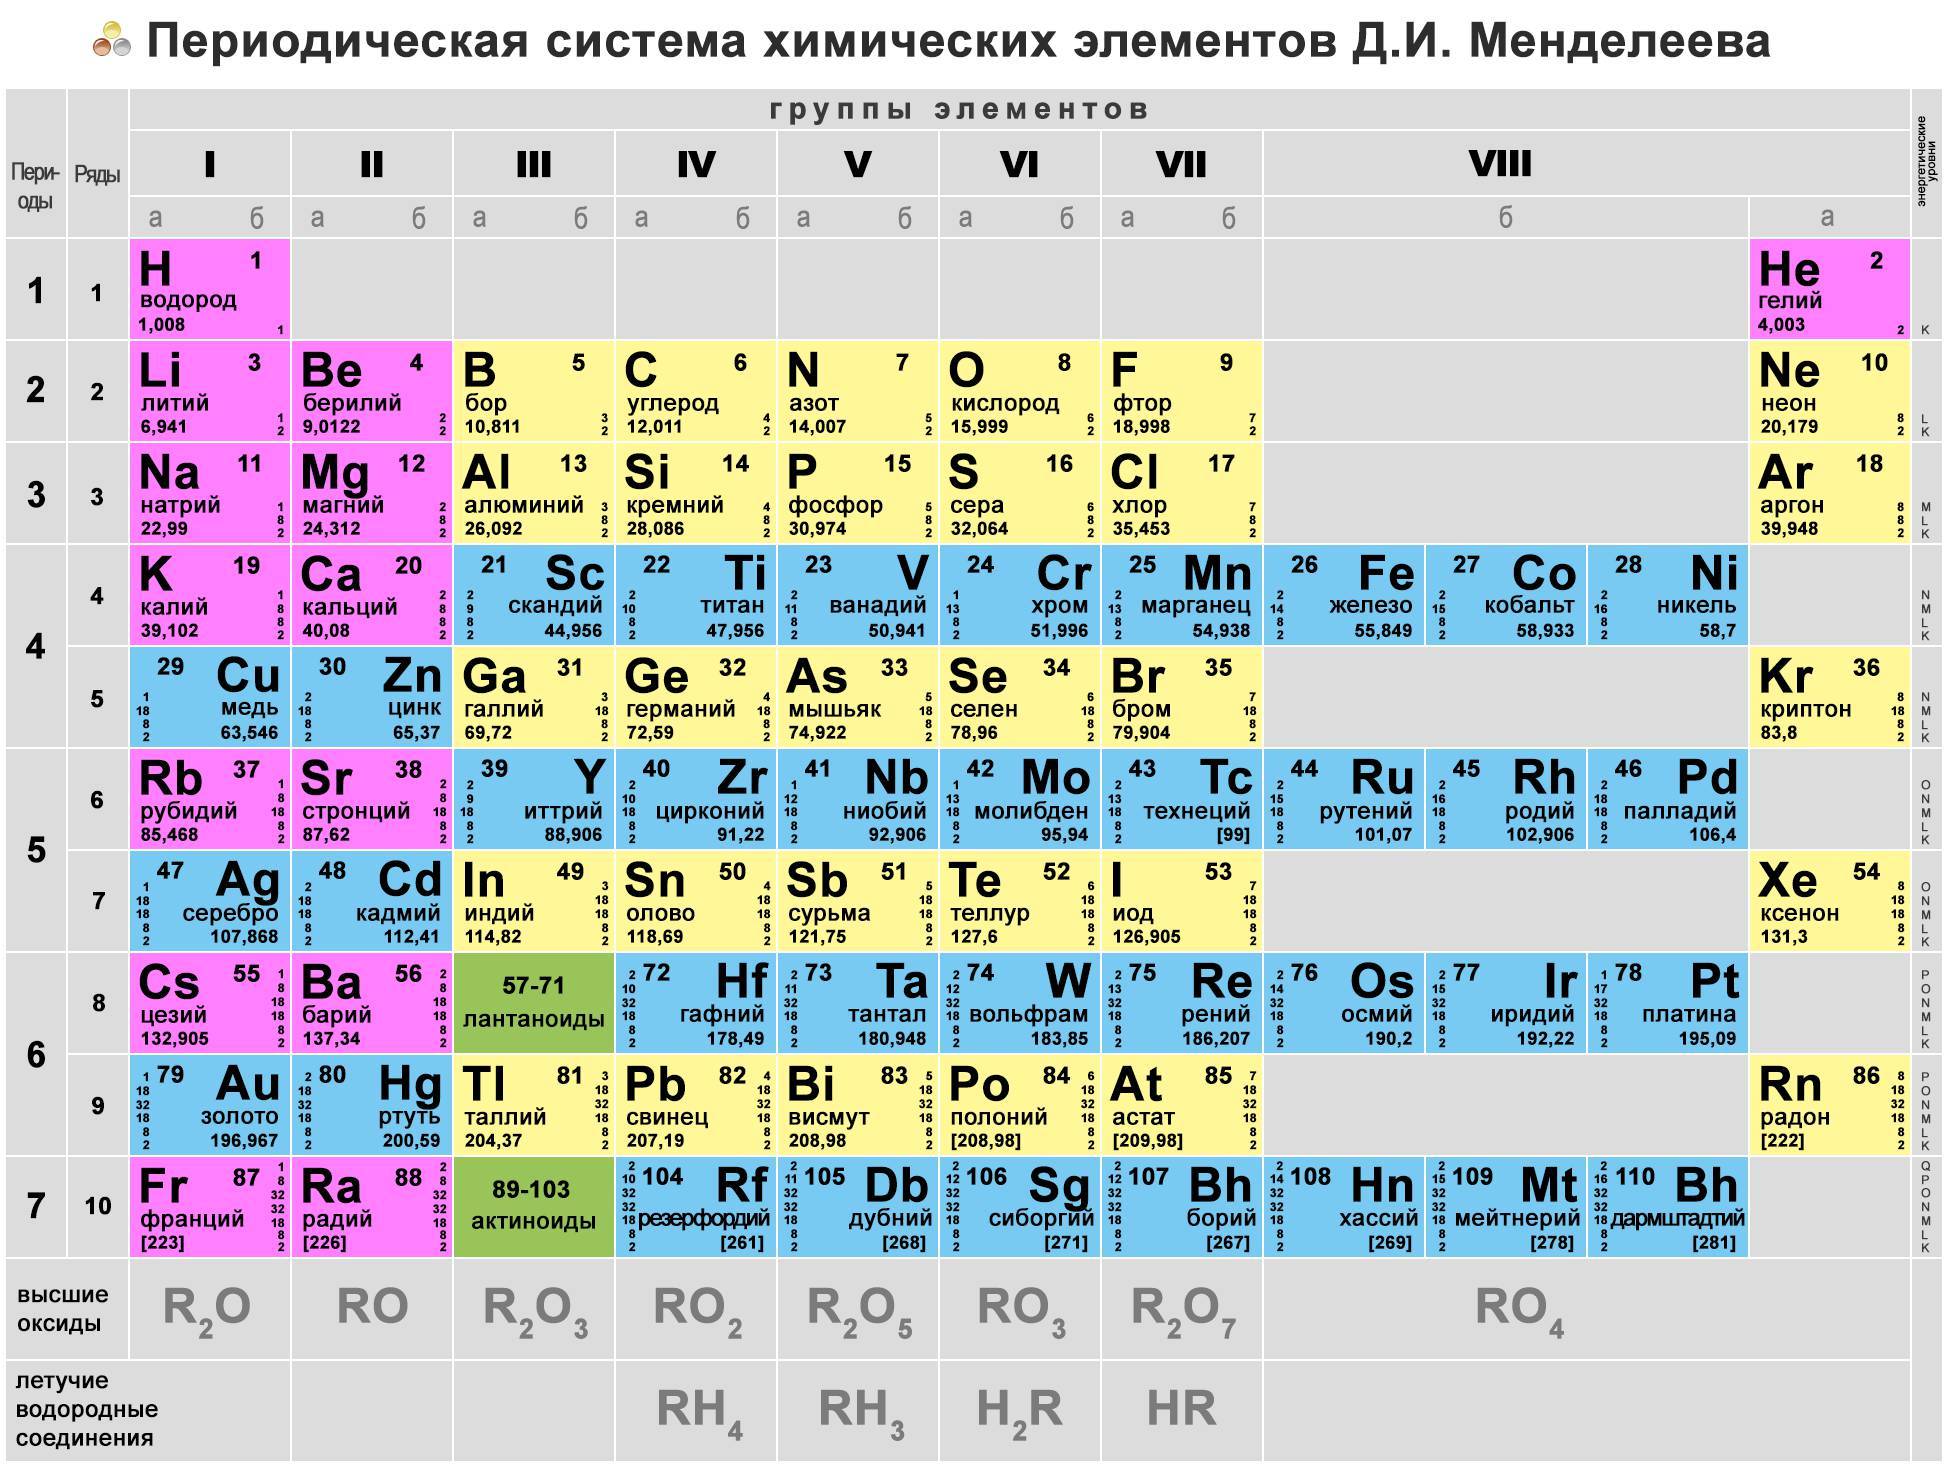 Количество этого элемента было. Химическая периодическая таблица Менделеева. Менделеев периодическая таблица химических элементов. Из чего состоит периодическая таблица Менделеева. Первые 20 элементов таблицы Менделеева.